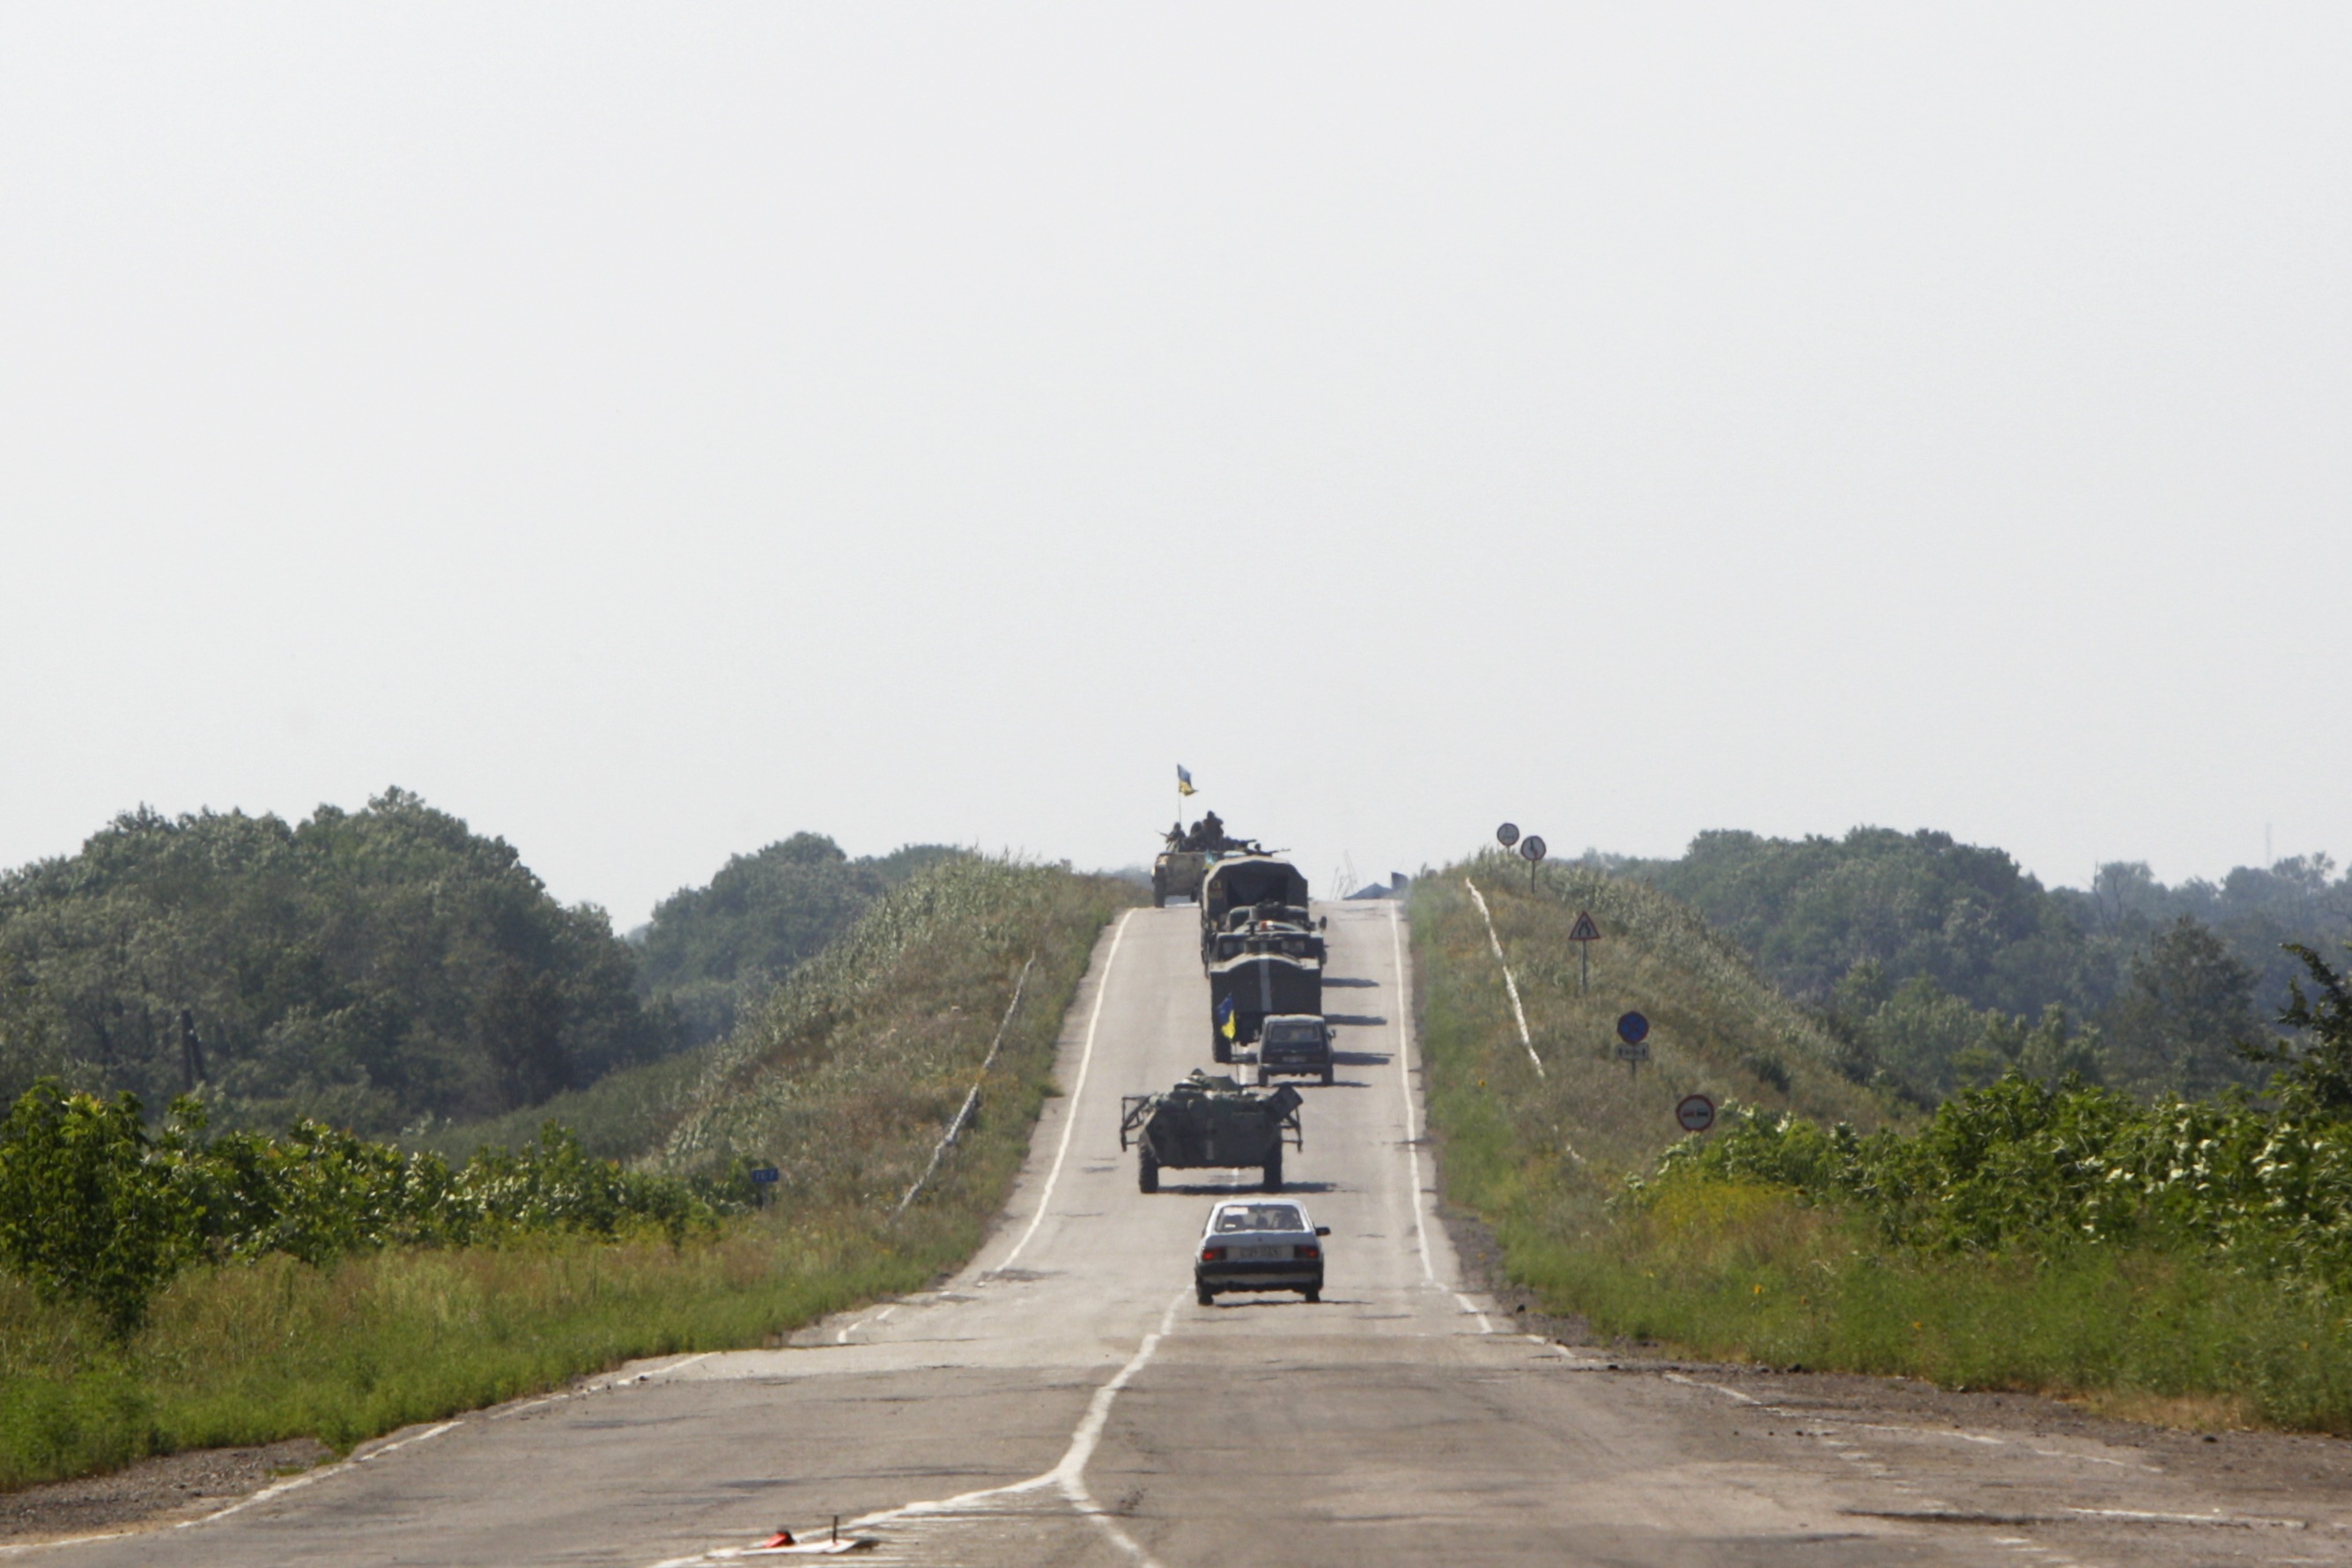 СНБО: около Новоазовска собирается бронетехника и артиллерия из РФ